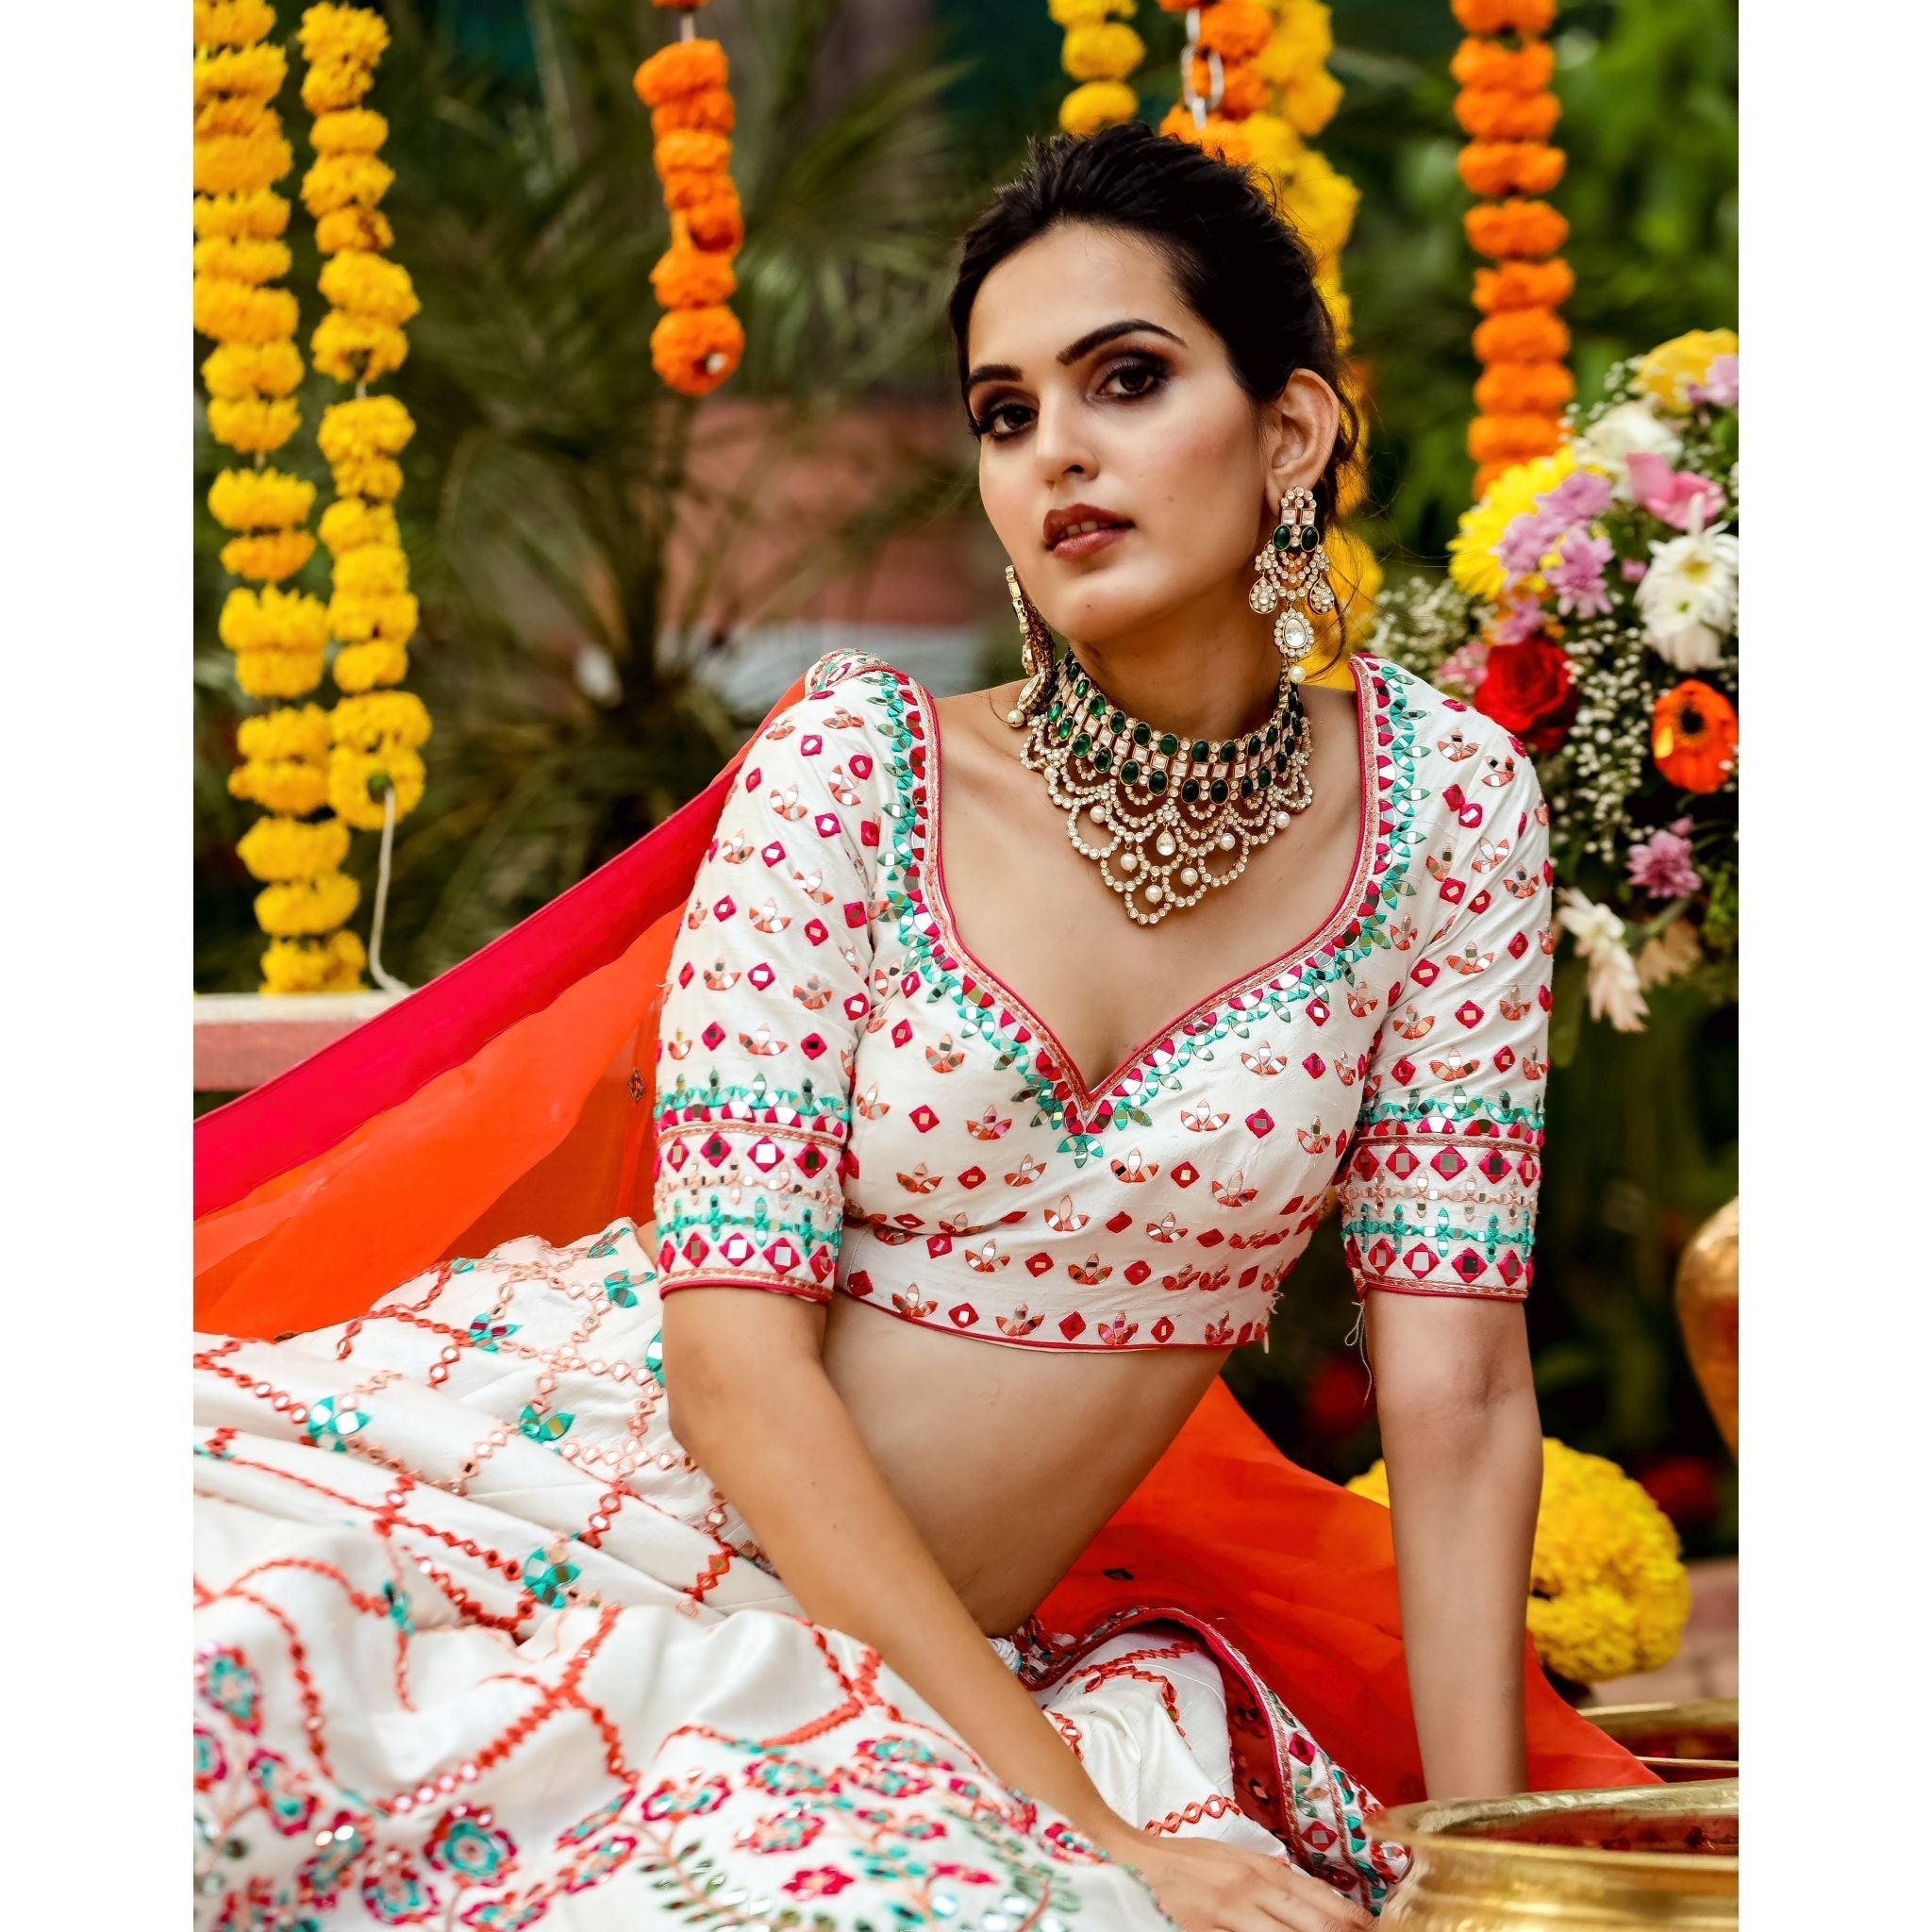 Ivory And Pink Mirrorwork Lehenga Set - Indian Designer Bridal Wedding Outfit